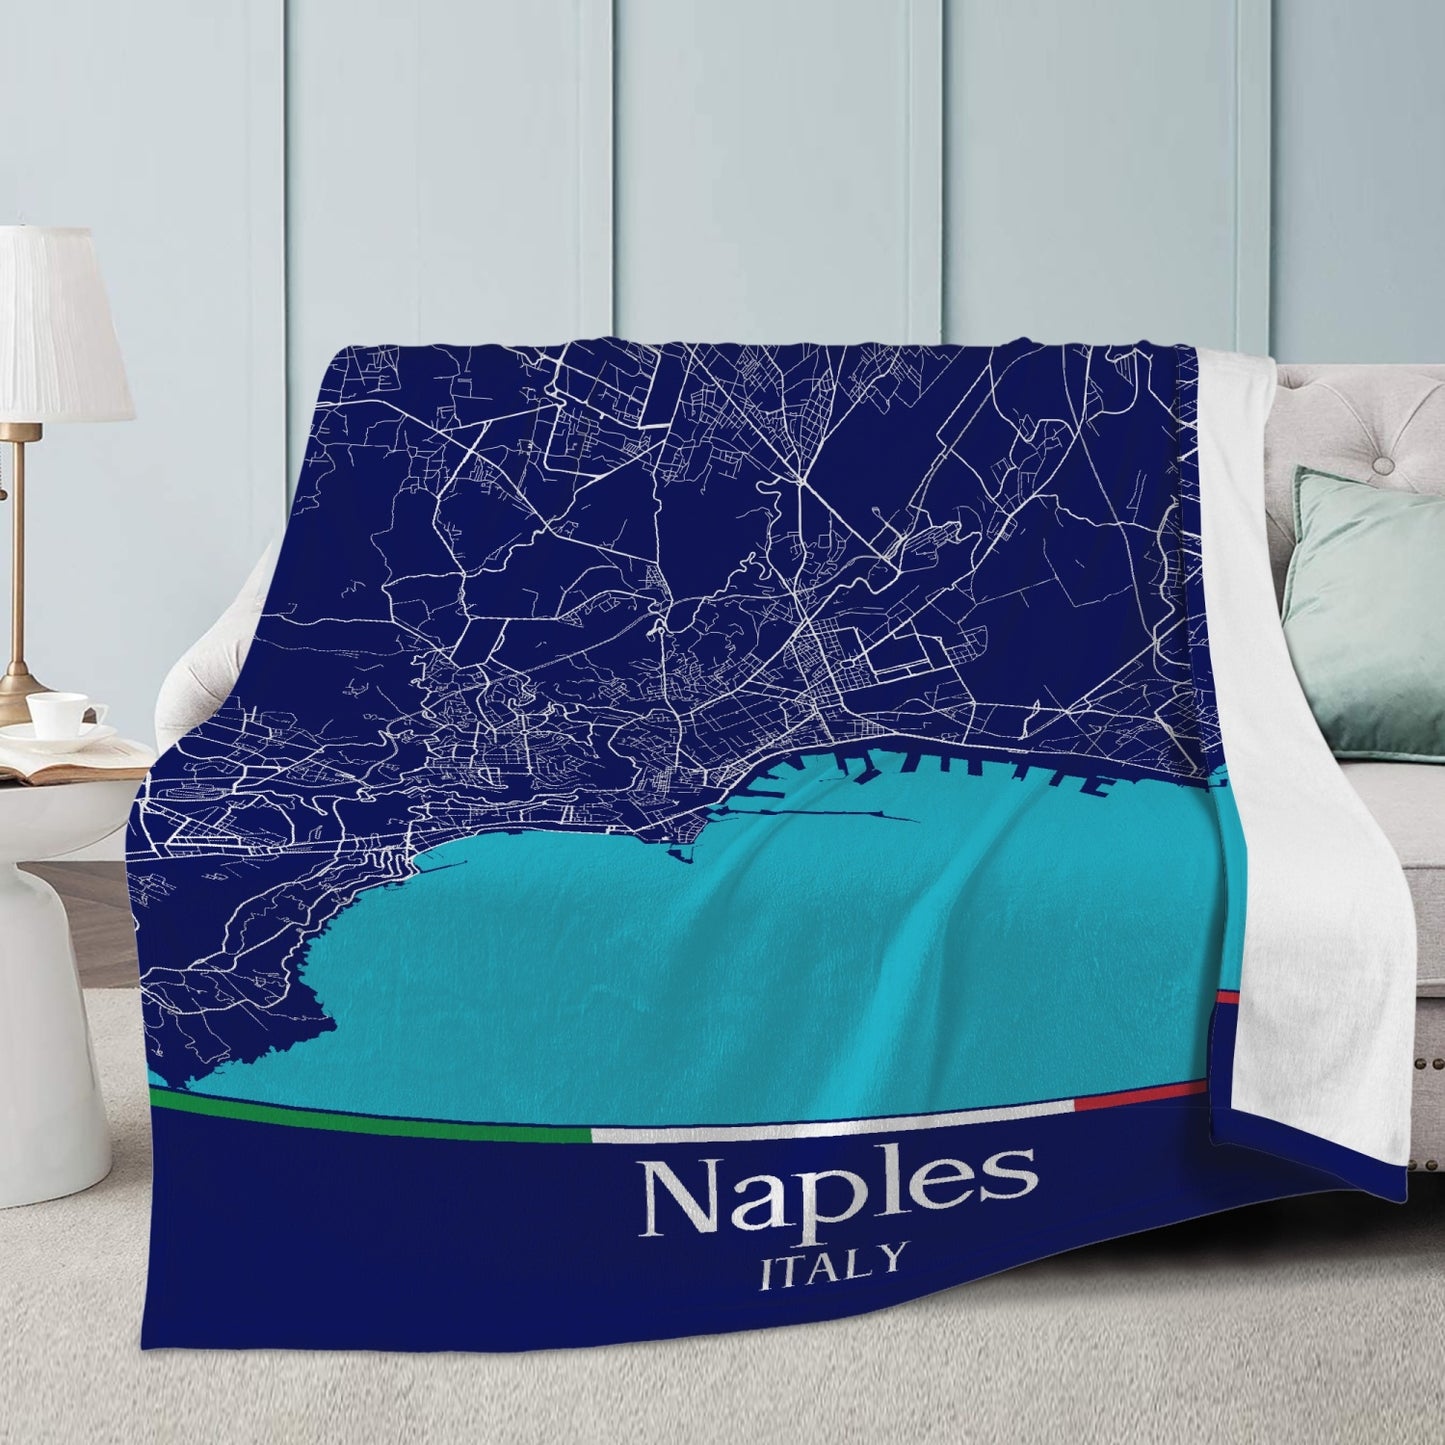 Naples City Map Fleece Blanket